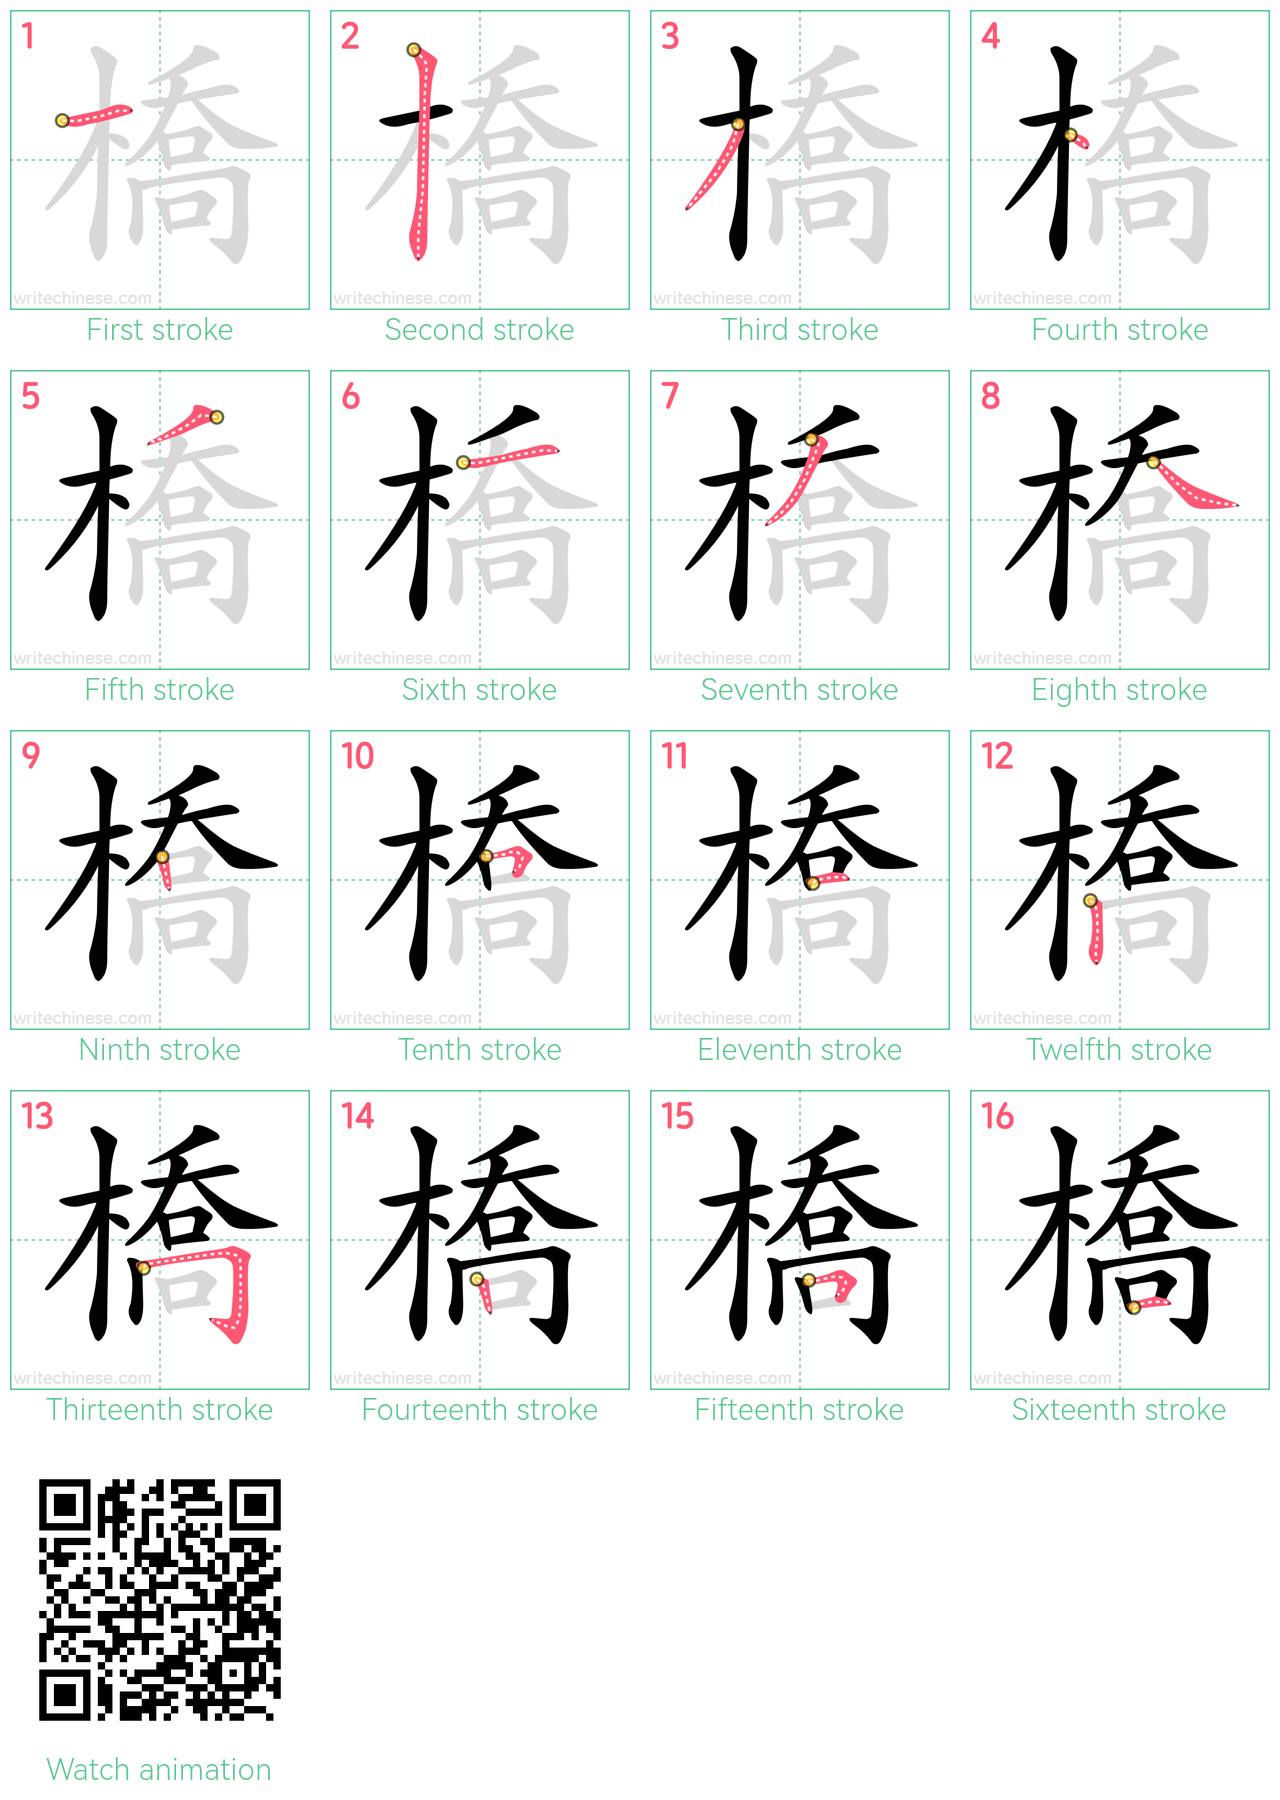 橋 step-by-step stroke order diagrams